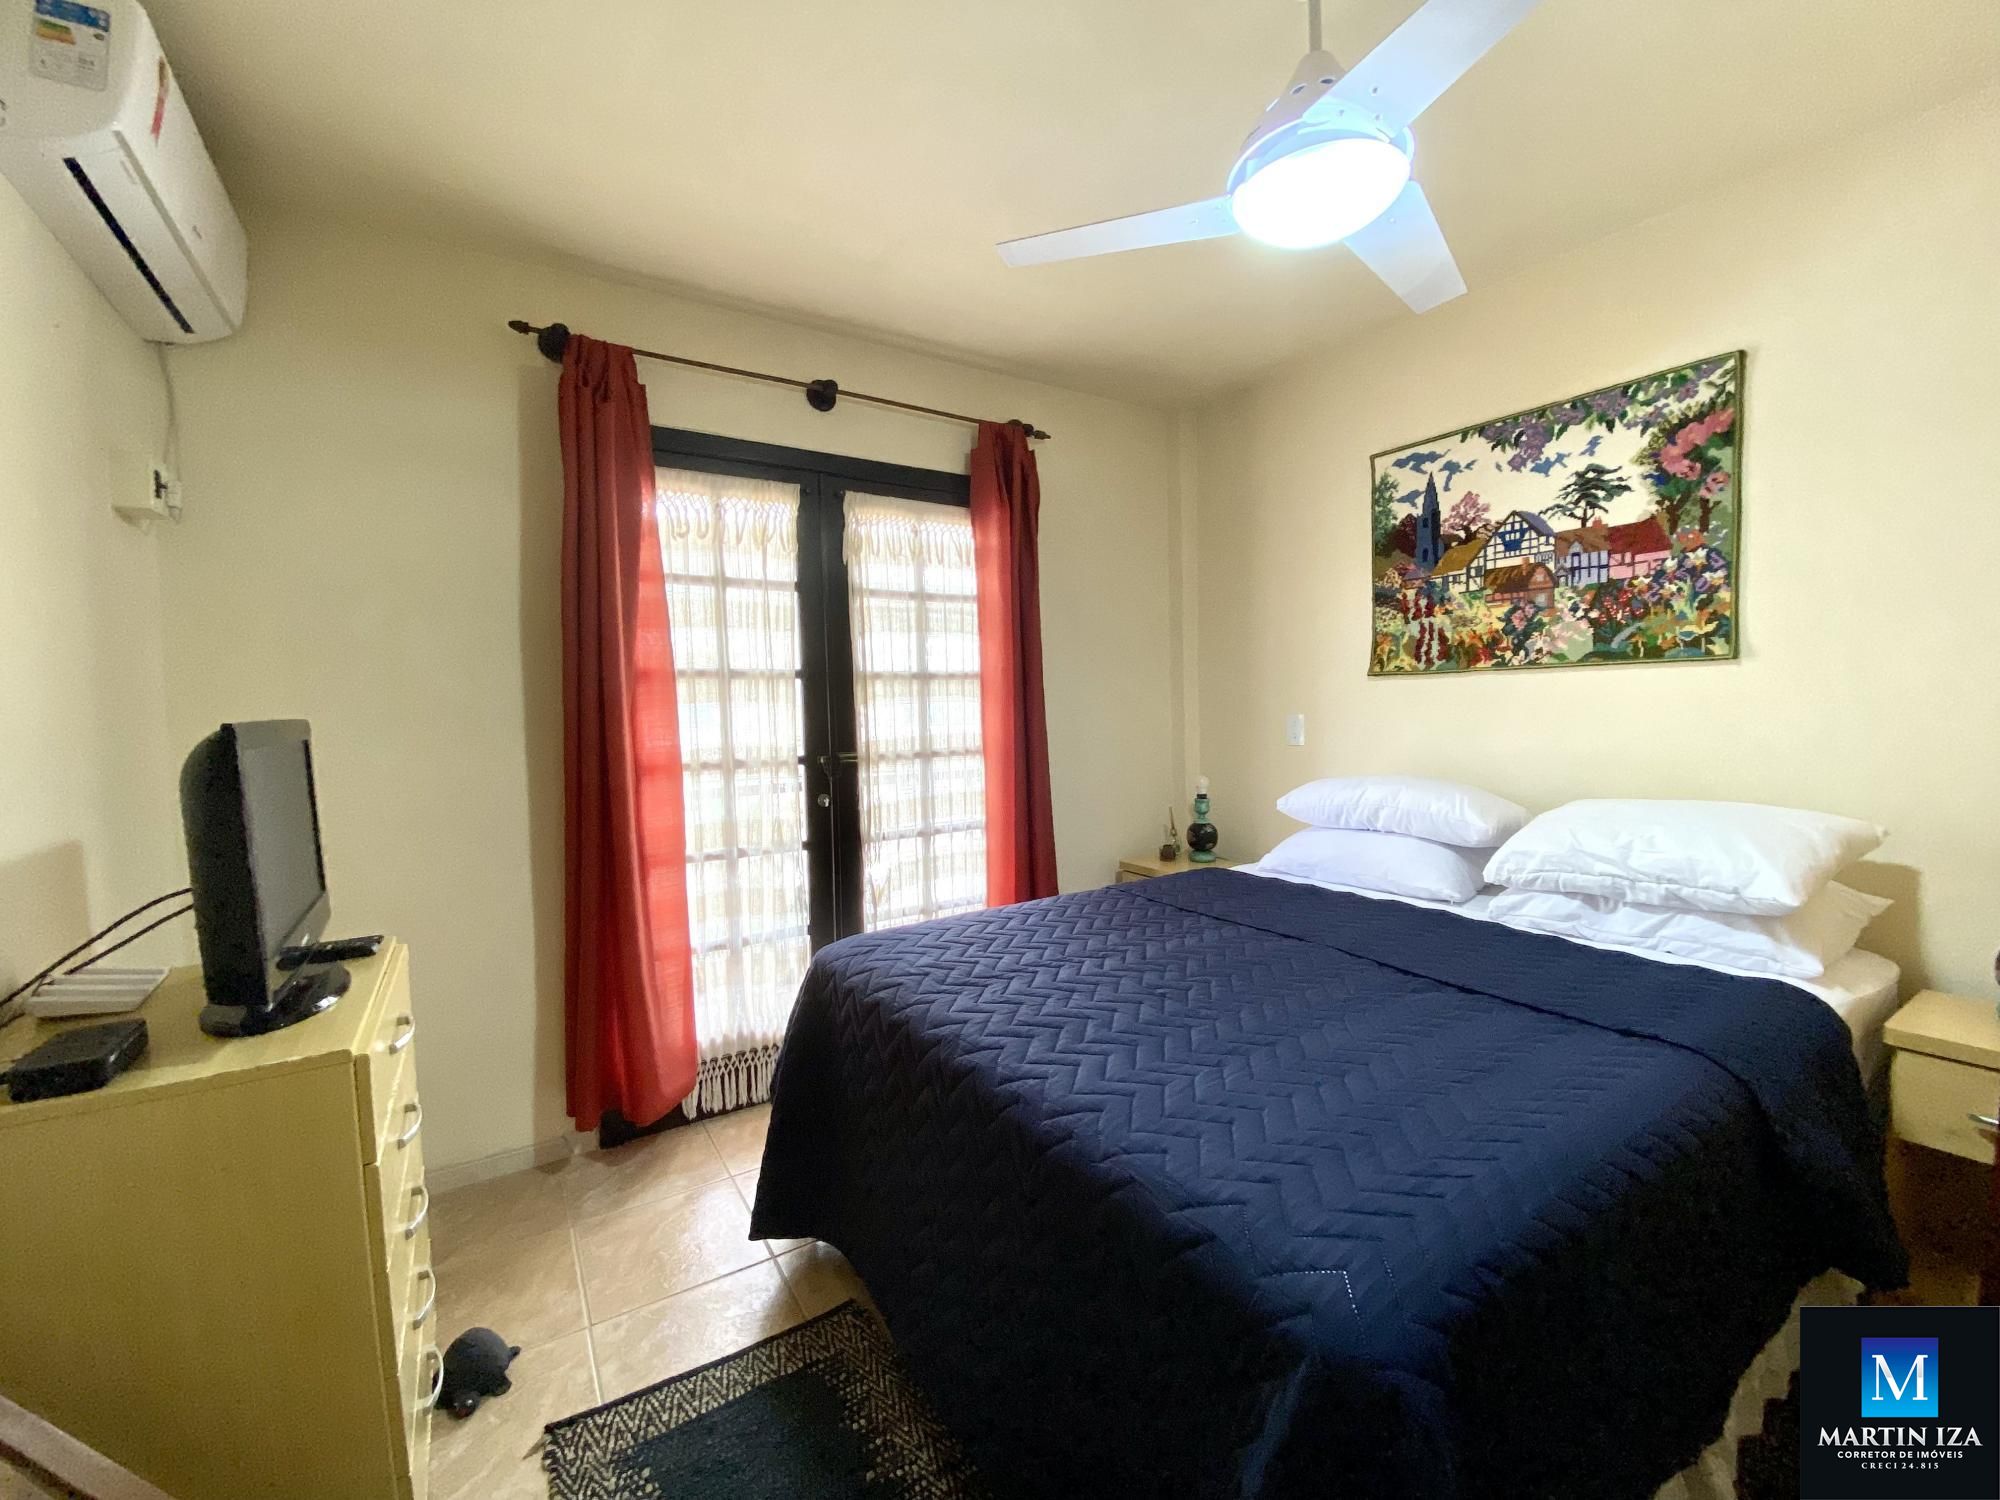 Sobrado com 3 Dormitórios para alugar, 75 m² por R$ 380,00